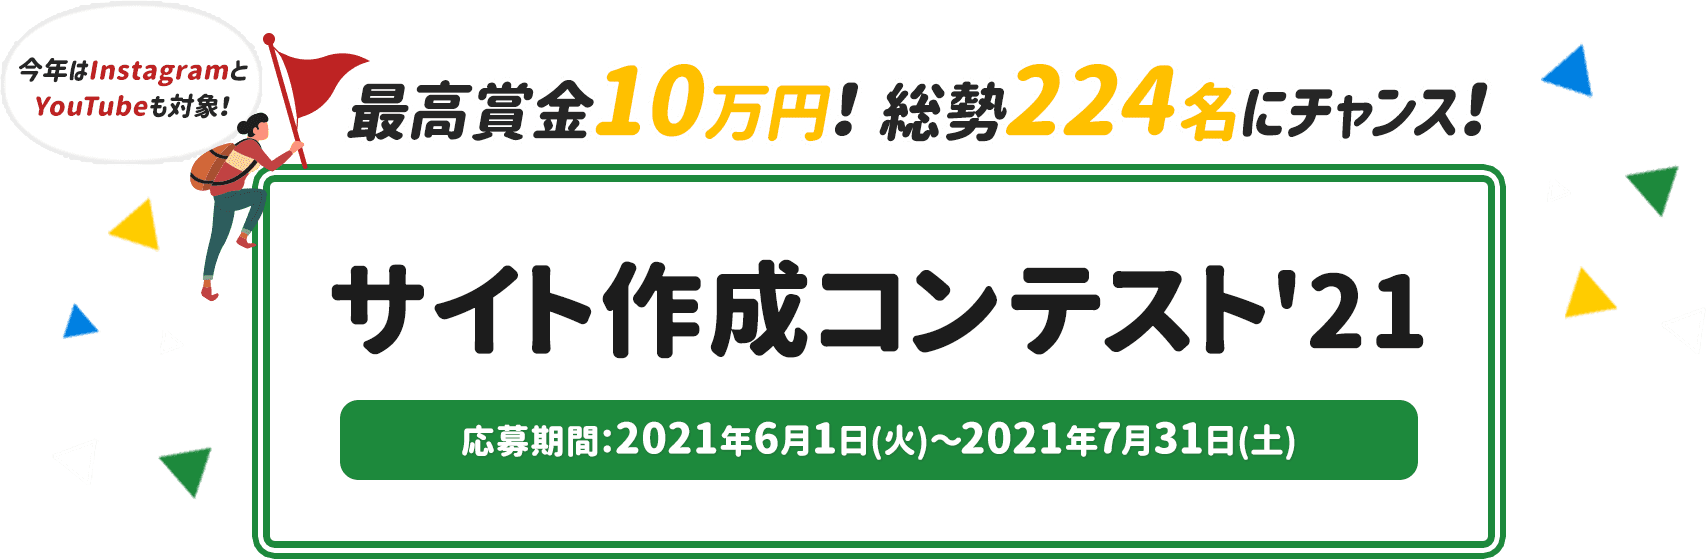 サイト作成コンテスト2021